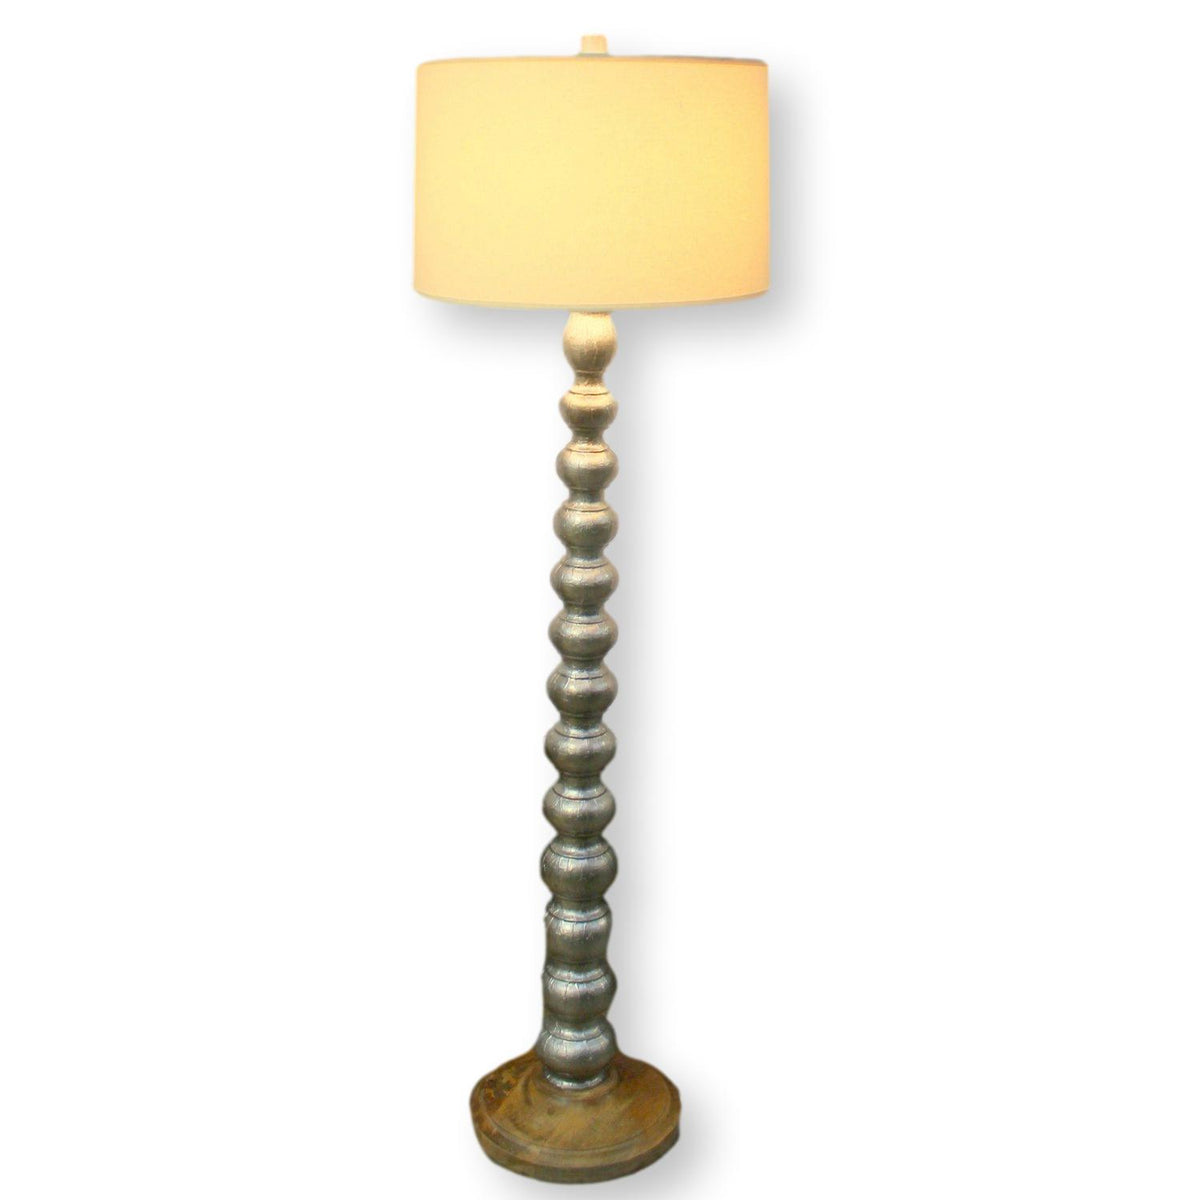 Rustic Silver & Wood Floor Lamp